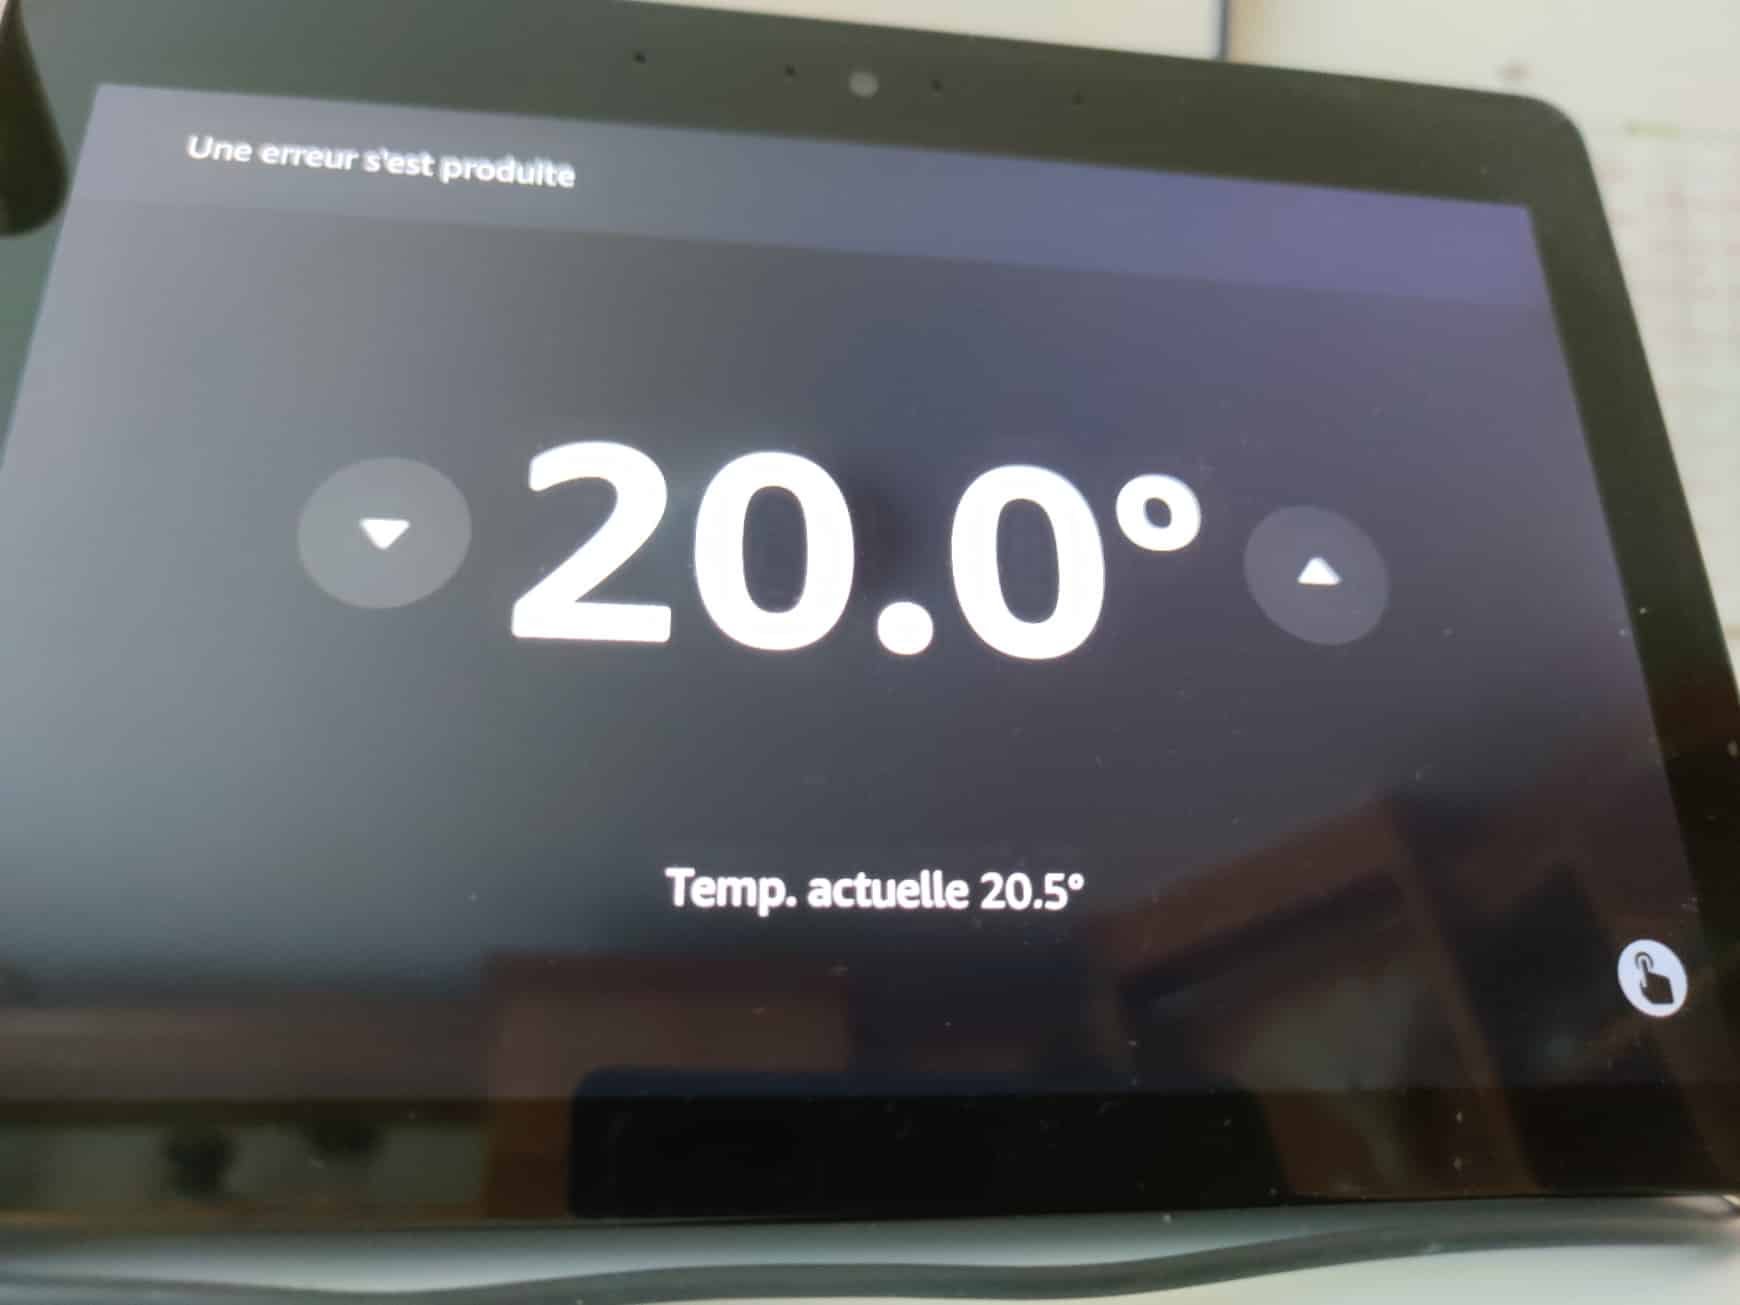 Netatmo Têtes thermostatiques connectées pour radiateur : meilleur prix,  test et actualités - Les Numériques